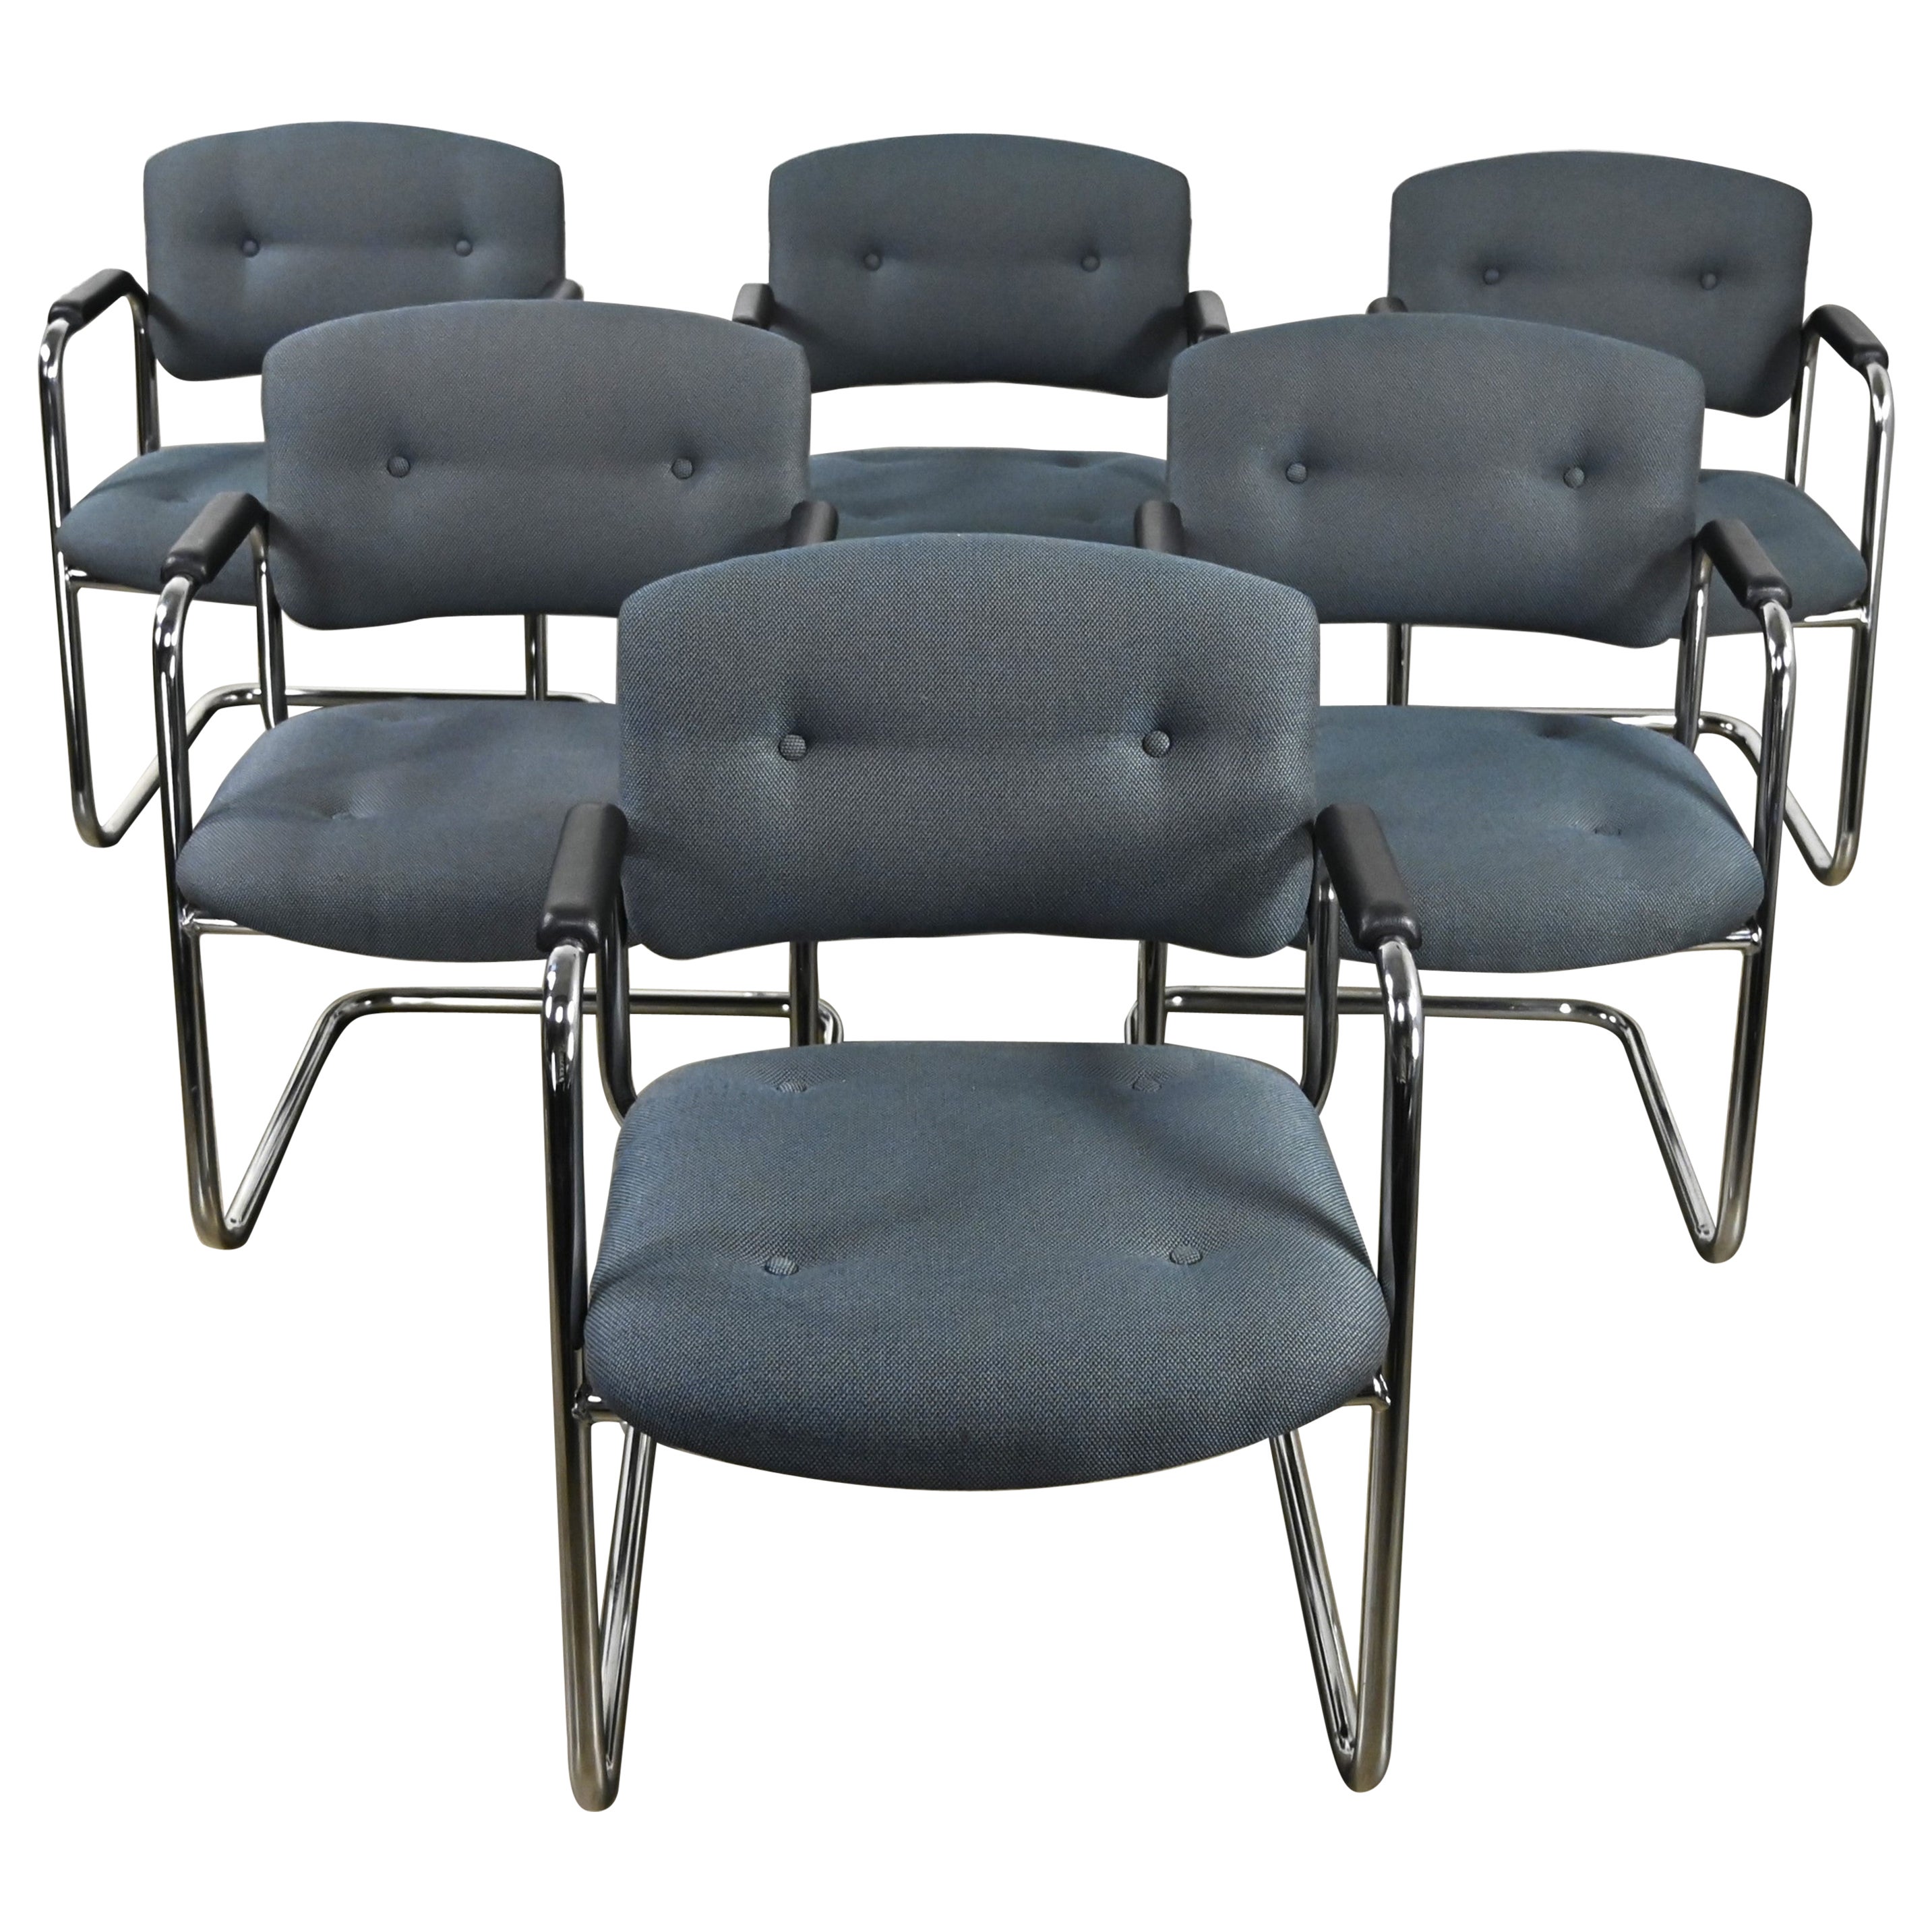 Fin du 20e siècle, chaises cantilever grises et chromées Style Steelcase Ensemble de 6